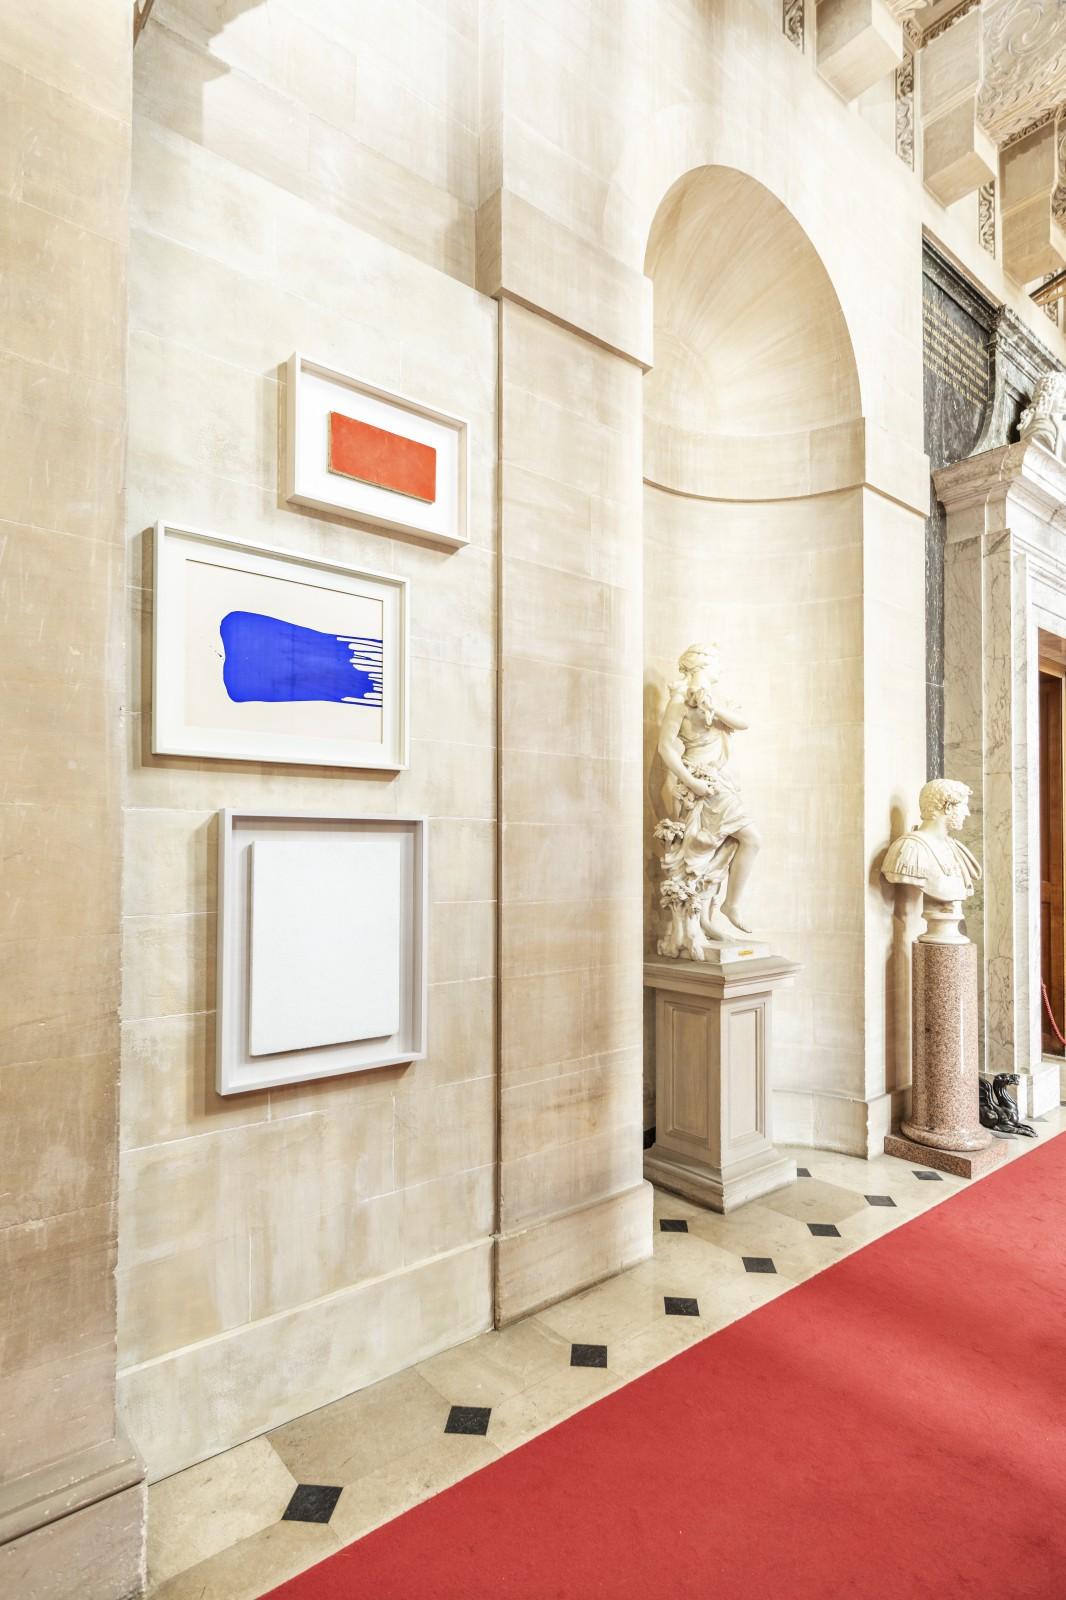 Vue de l'exposition "Yves Klein", Blenheim Palace, 2018 (IKB 27, M 33, M 25)